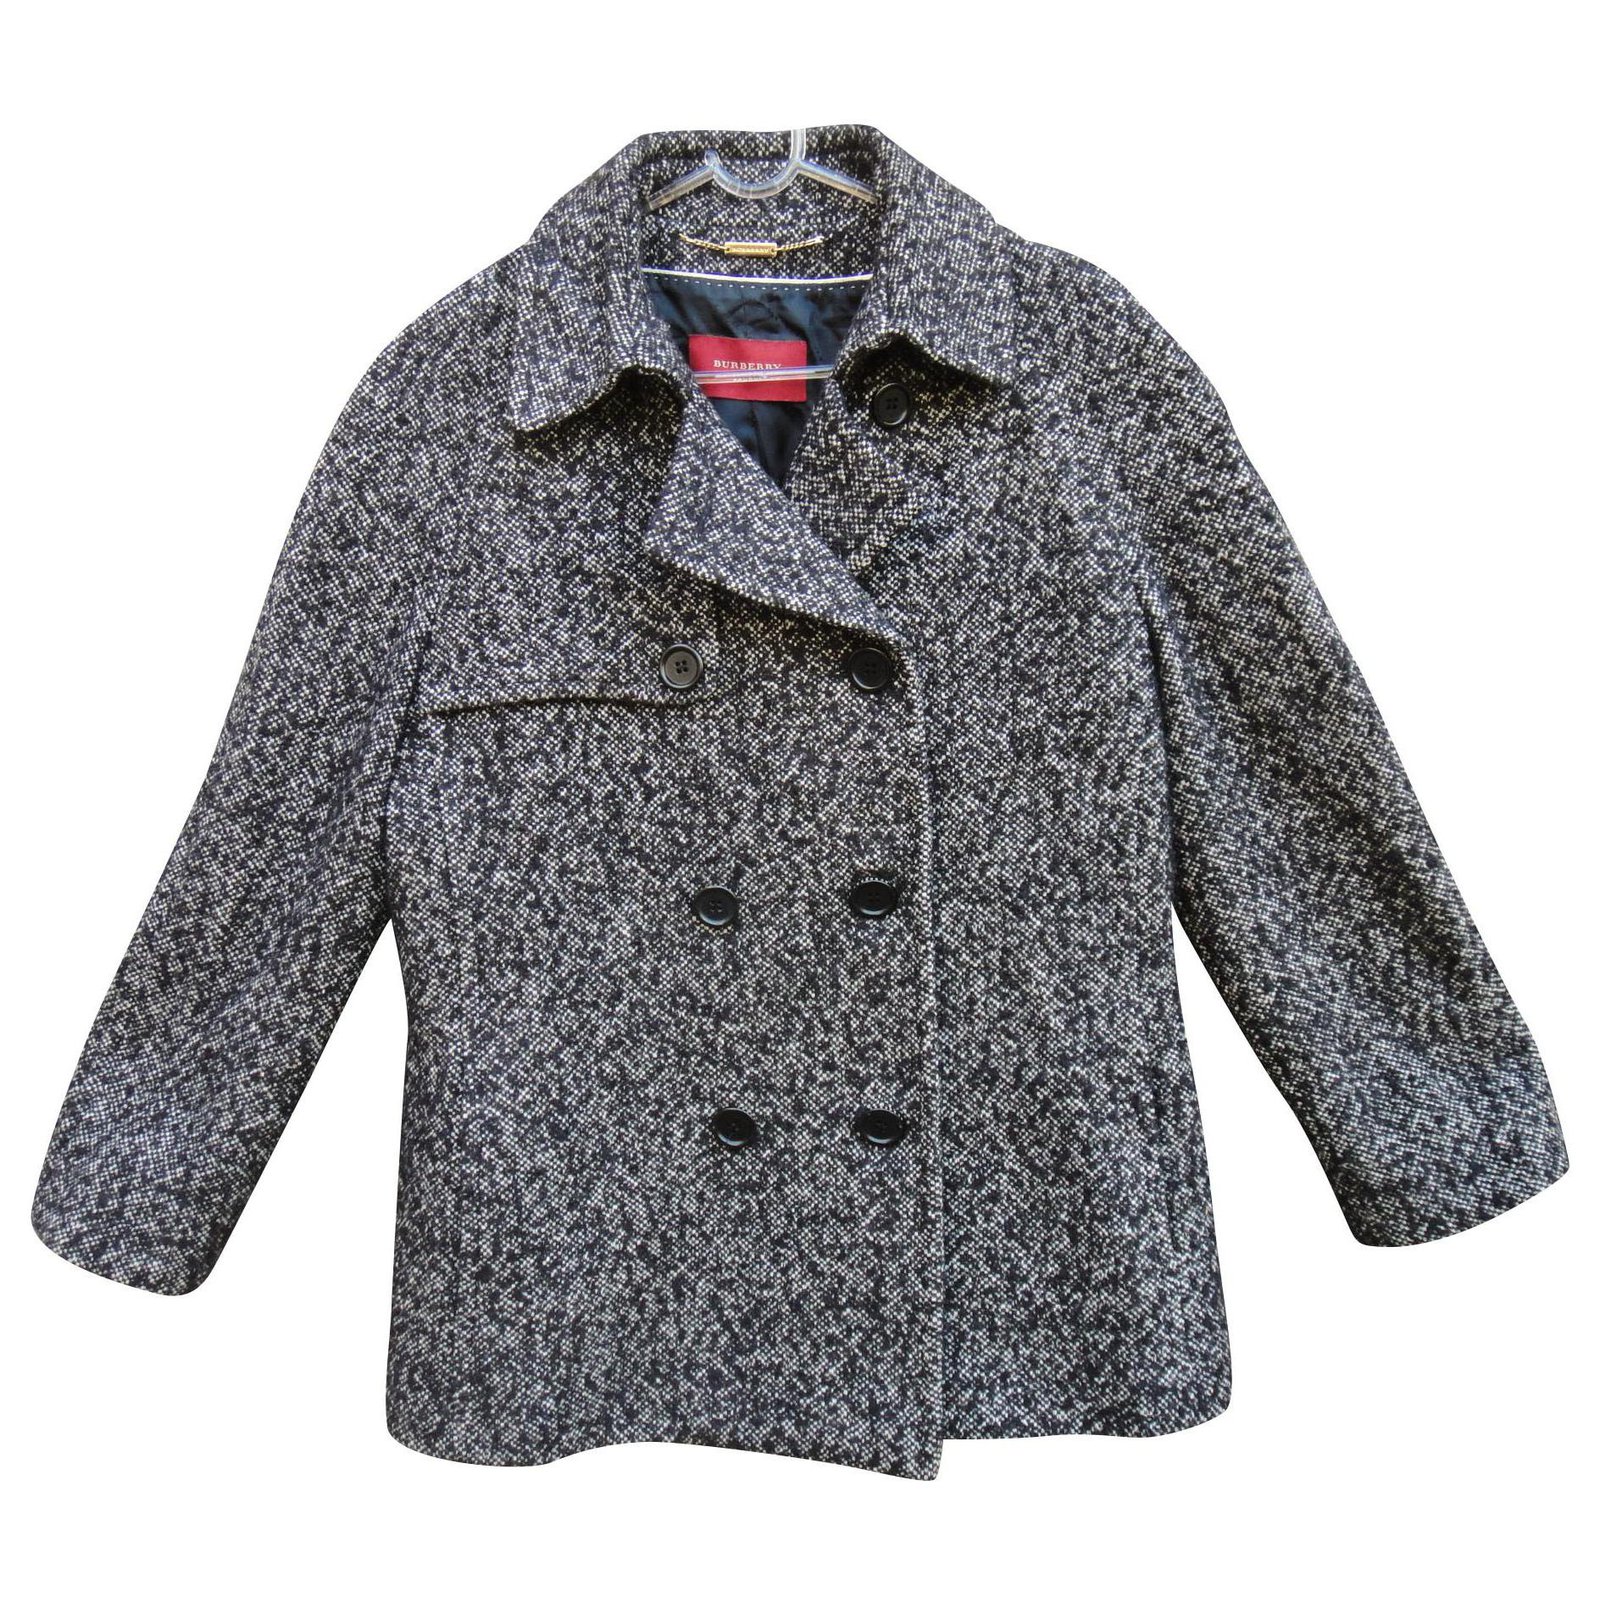 burberry winter coat